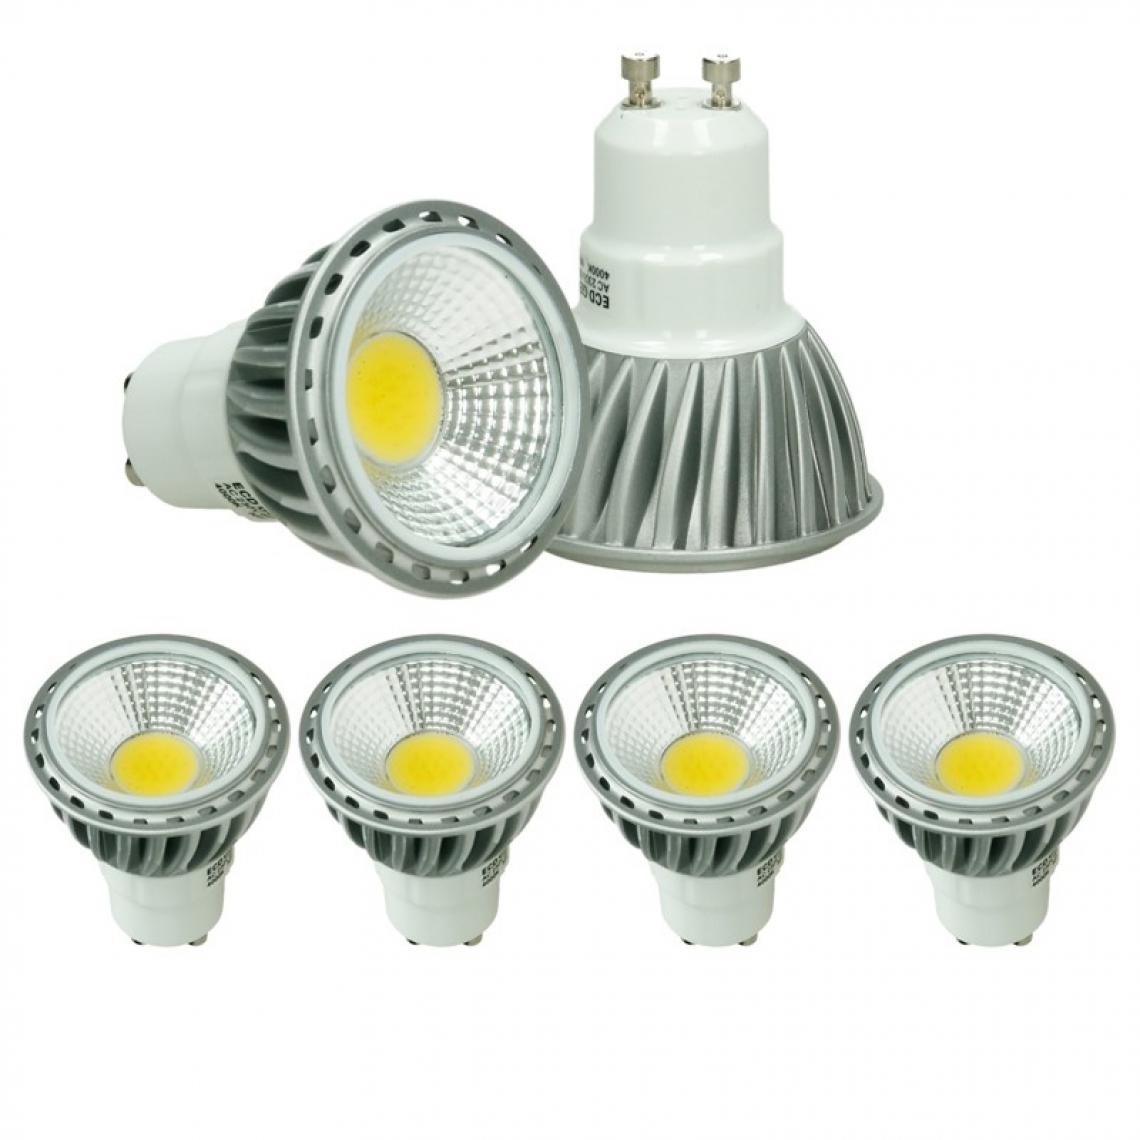 Ecd Germany - ECD Germany 4 x GU10 COB spot 220-240 6W Haute Puissance Lampe à économie d'énergie d'environ 386 lumens remplace 40W Lampe halogène angle de 60 degrés 6000K Blanc Froid - Ampoules LED